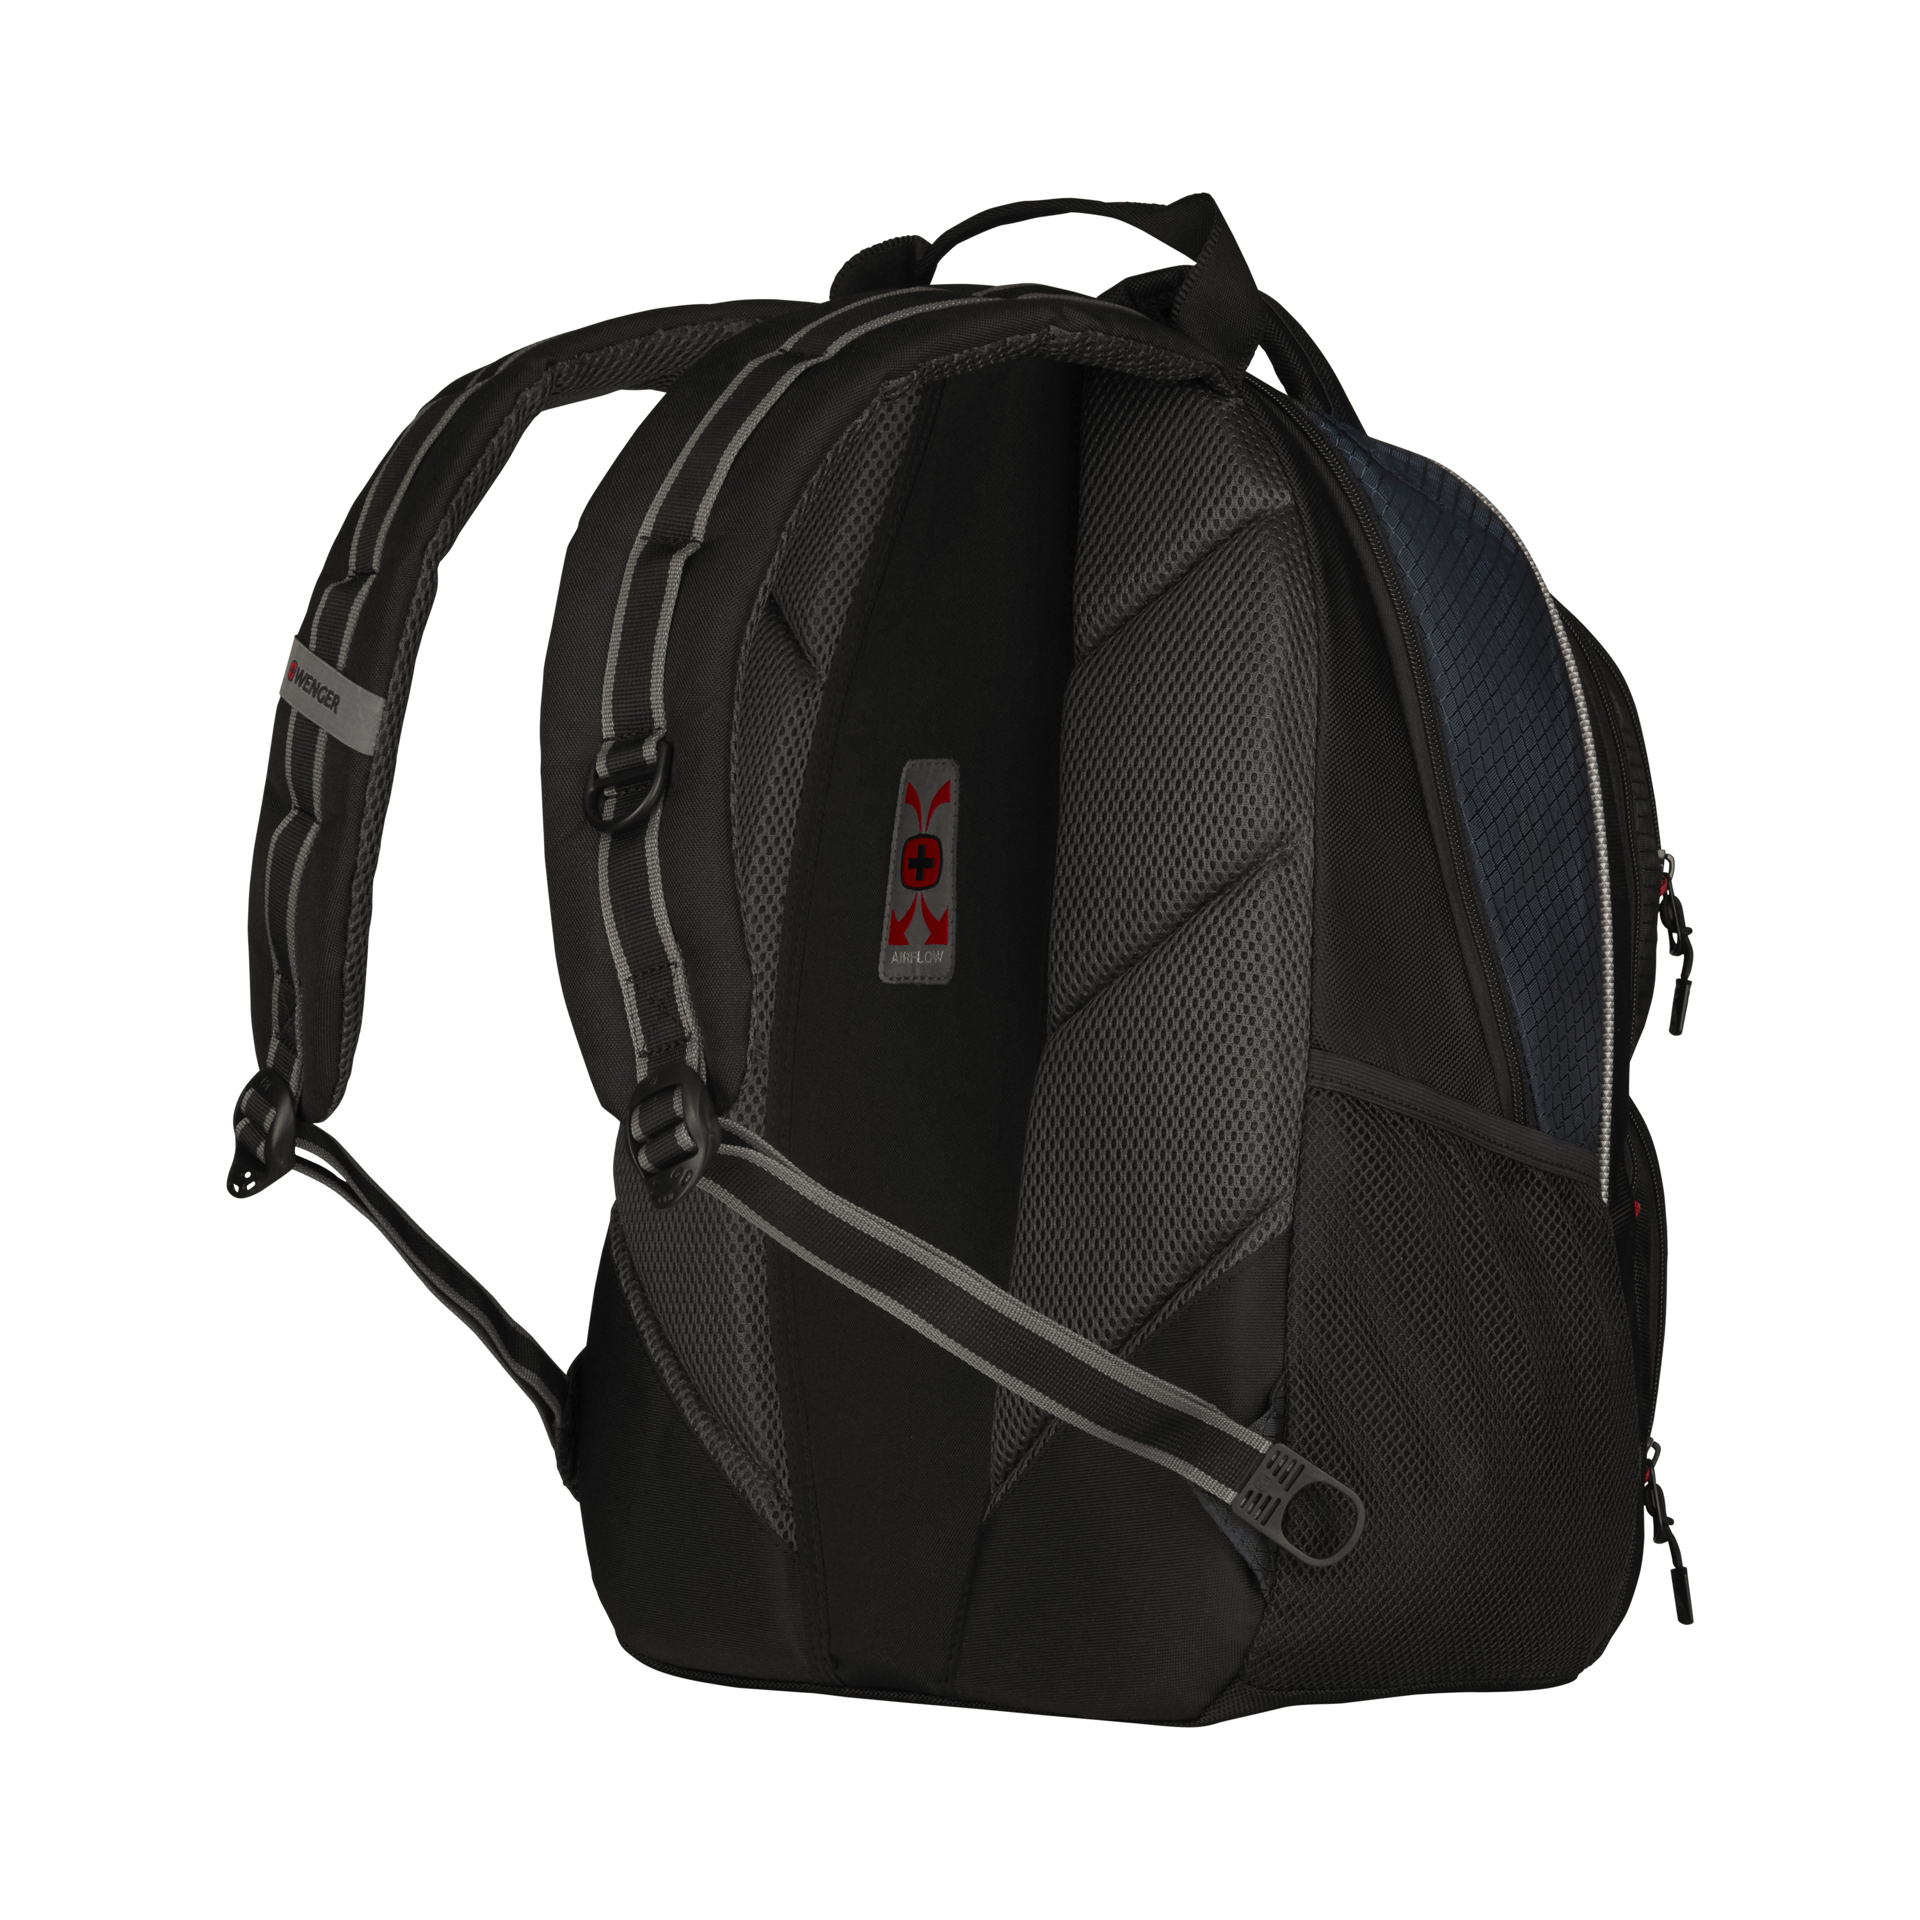 Wenger Cobalt Backpack back of backpack